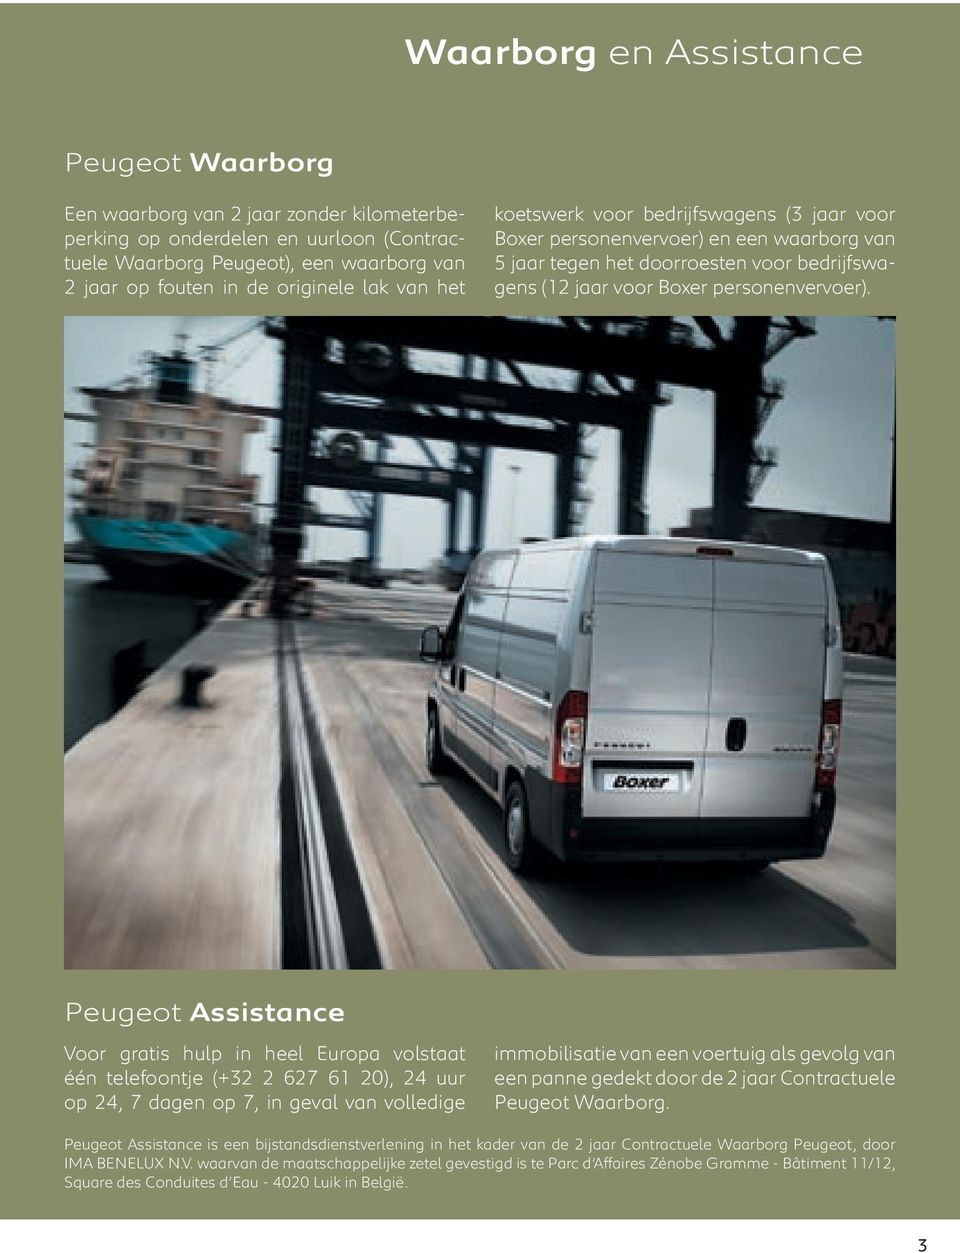 Peugeot Assistance Voor gratis hulp in heel Europa volstaat één telefoontje (+32 2 627 61 20), 24 uur op 24, 7 dagen op 7, in geval van volledige immobilisatie van een voertuig als gevolg van een